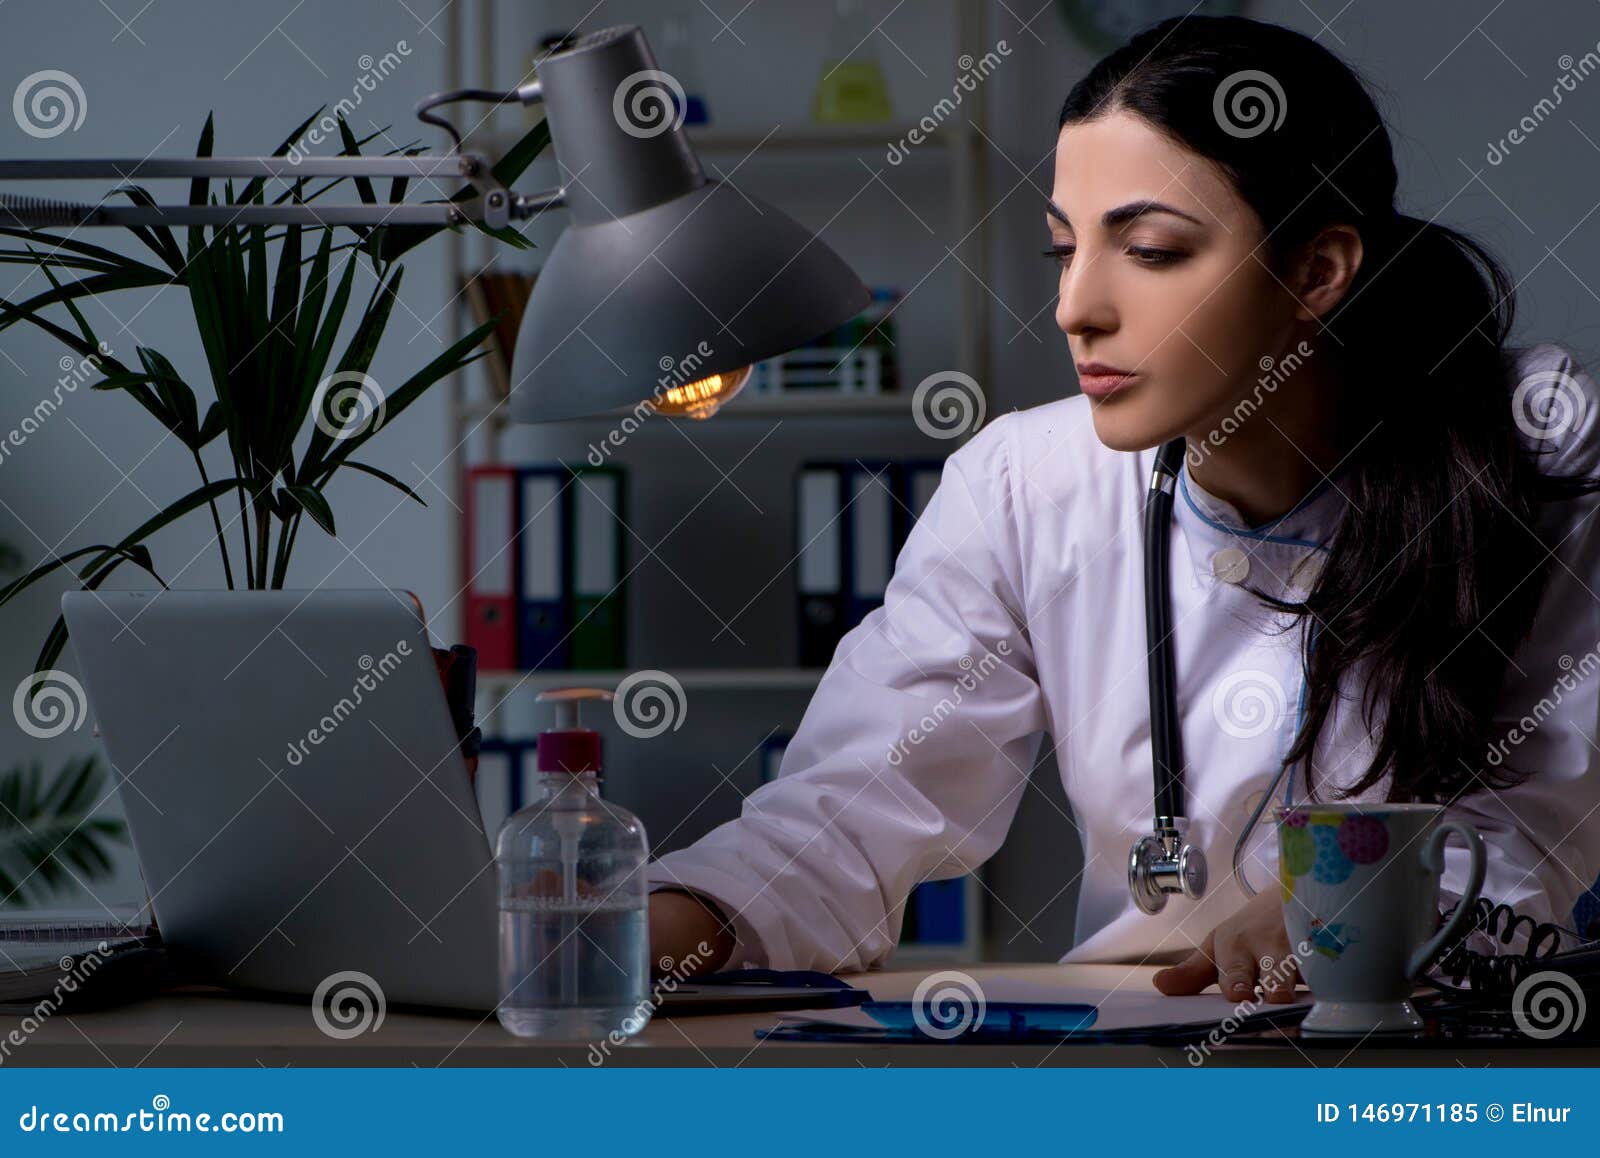 Night doctors. Девушка врач. Женщина врач работает ночью. Фото уставшего врача женщины.